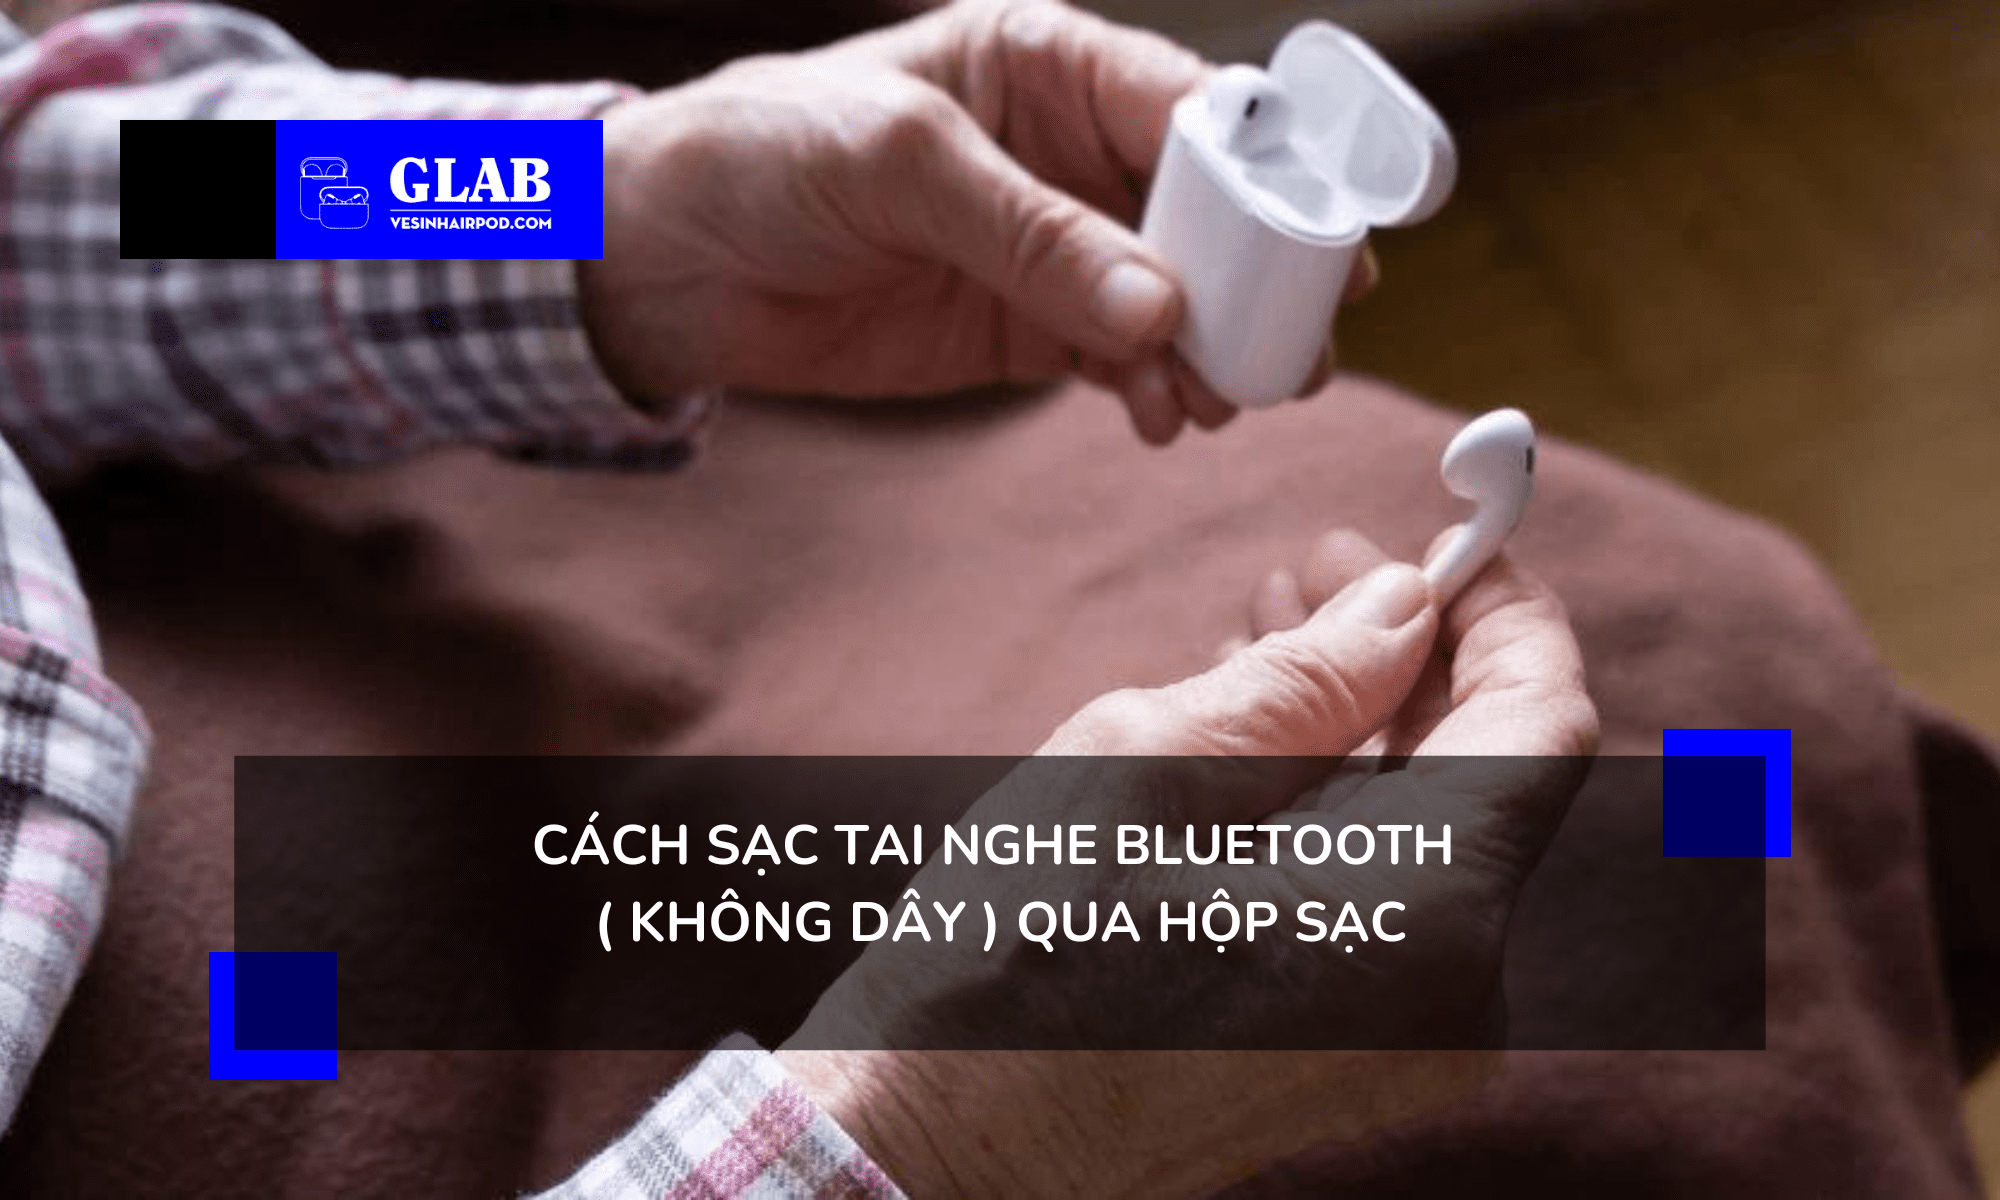 cach-sac-tai-nghe-bluetooth